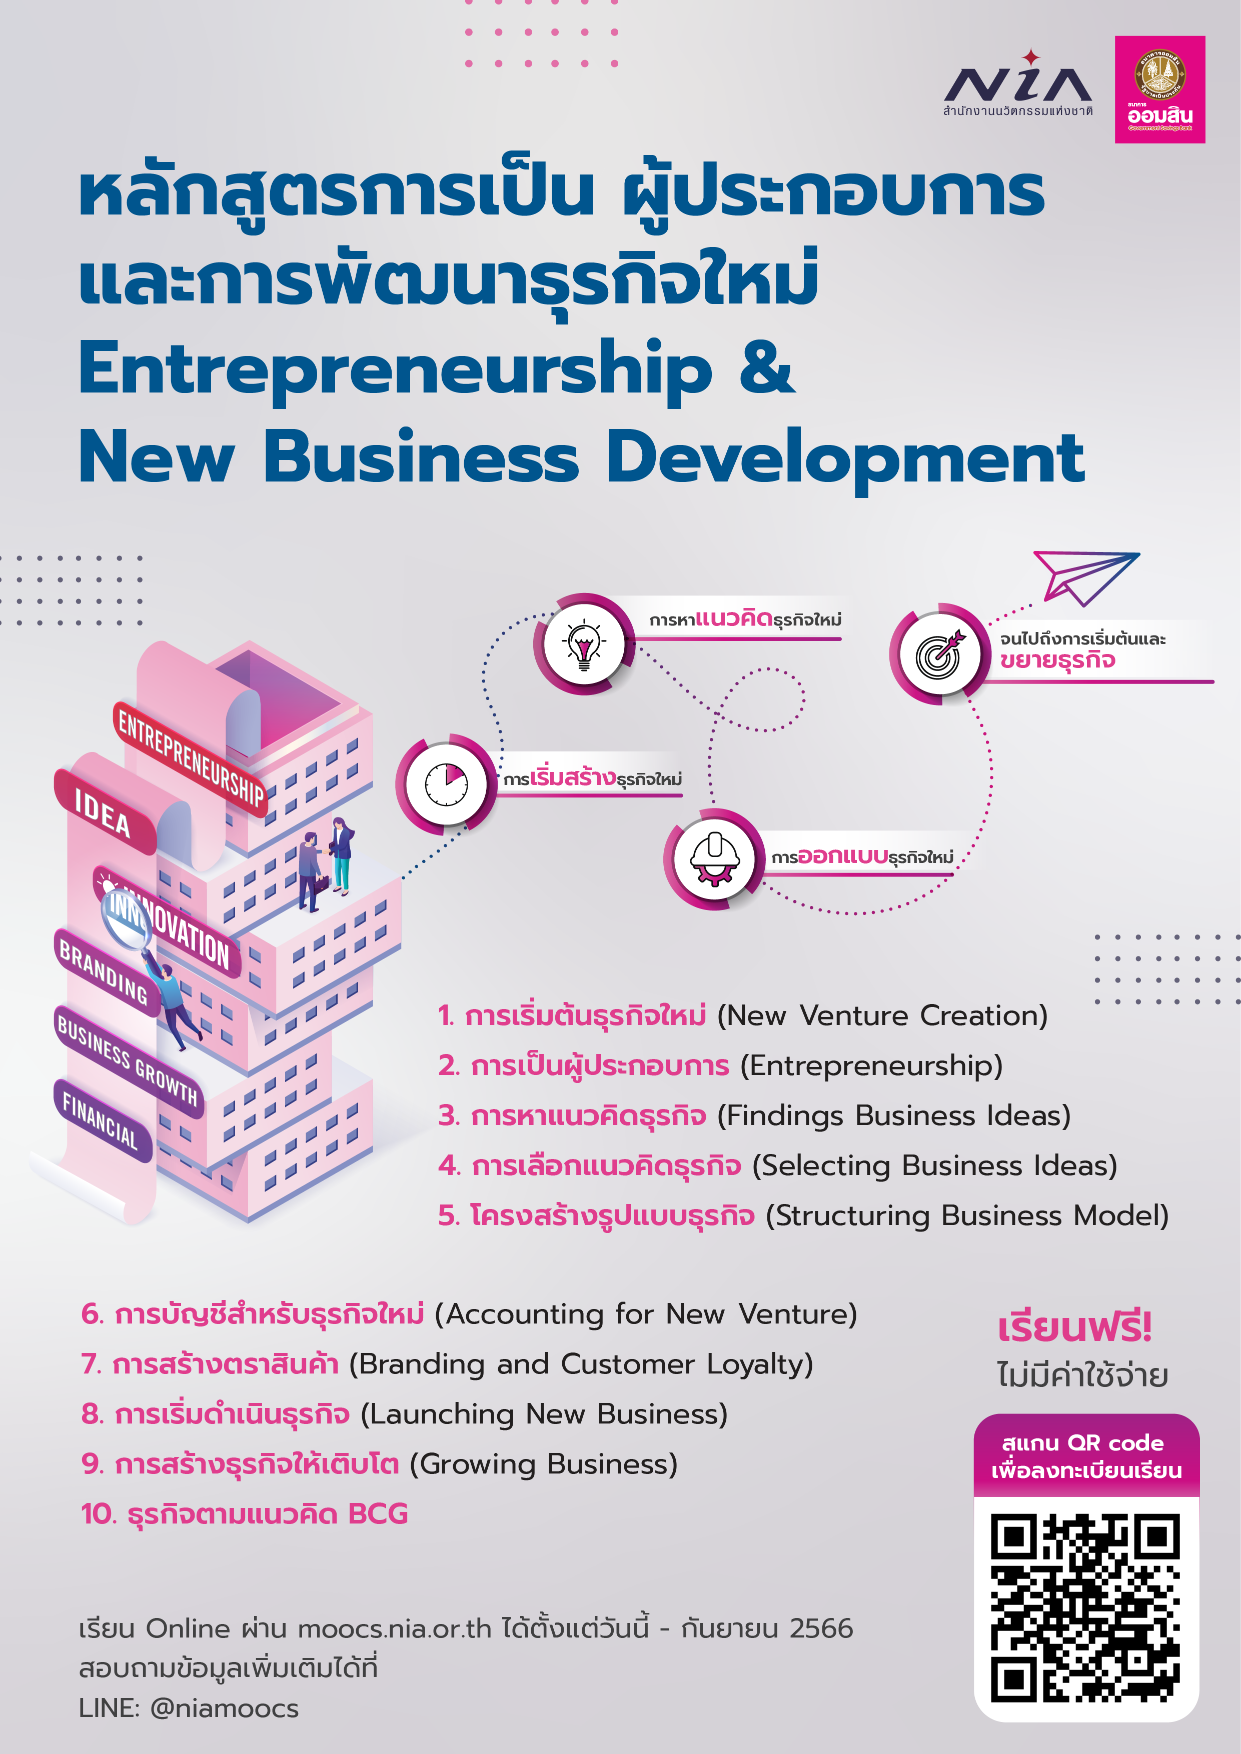 Entrepreneurship & New Business Development